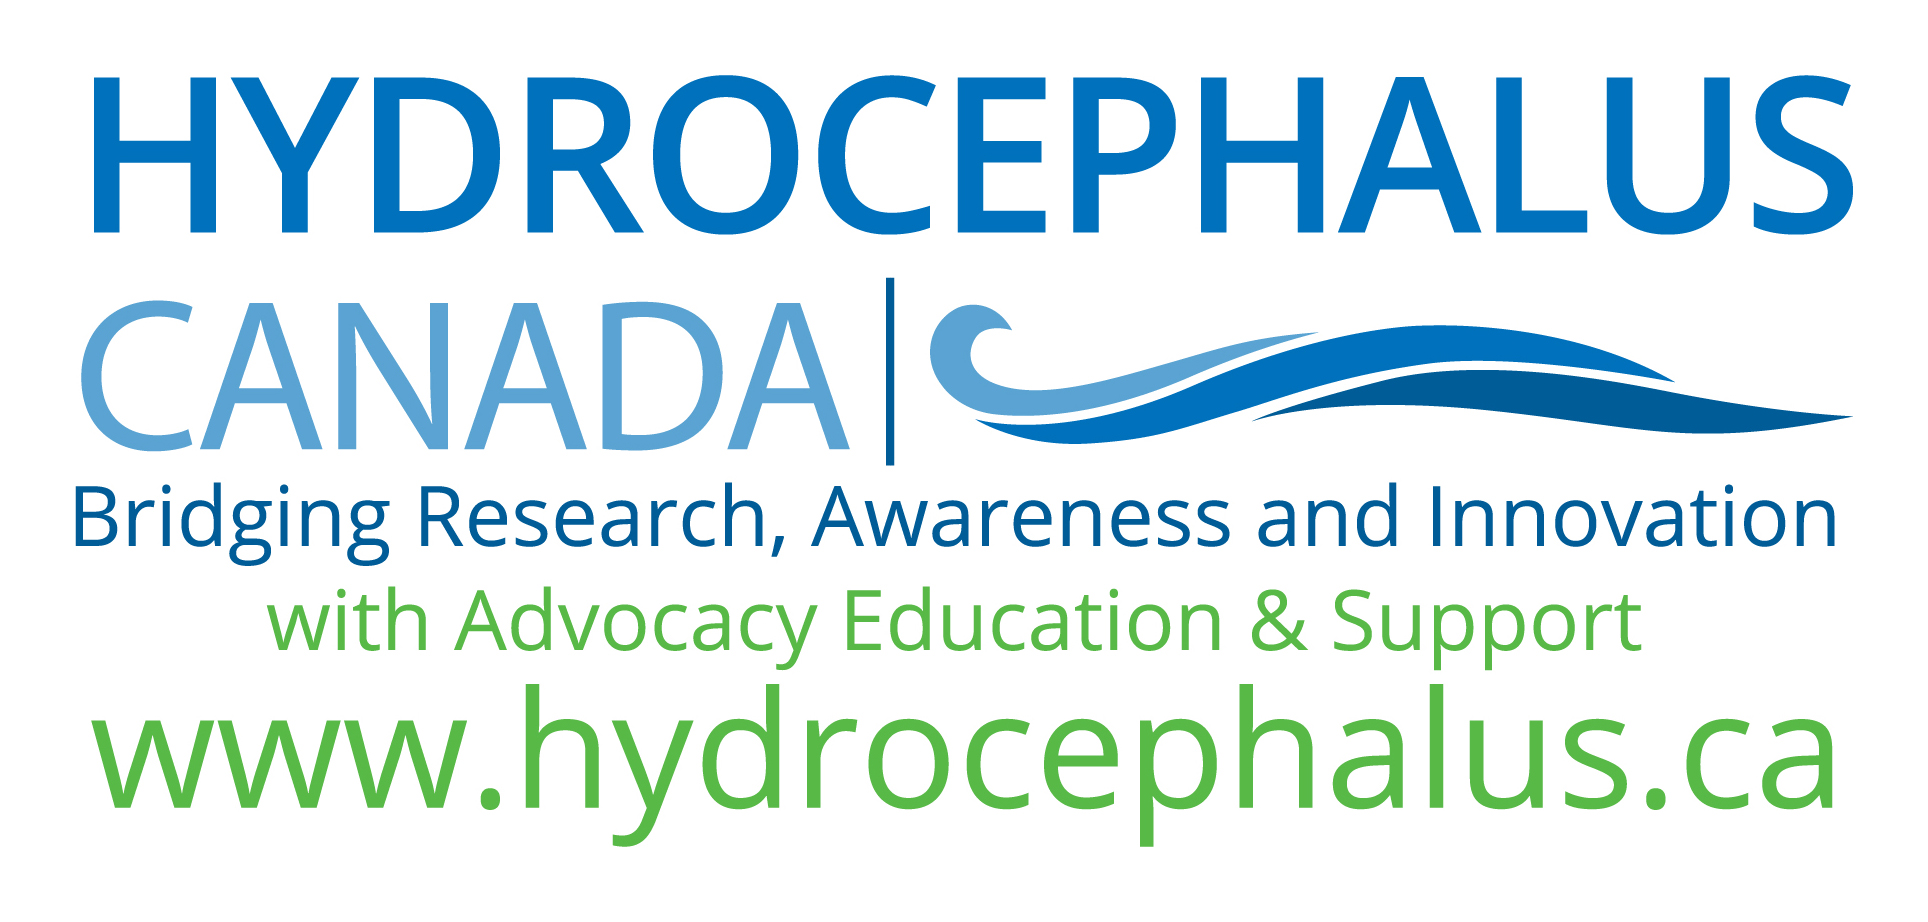 Hydrocephalus Canada logo